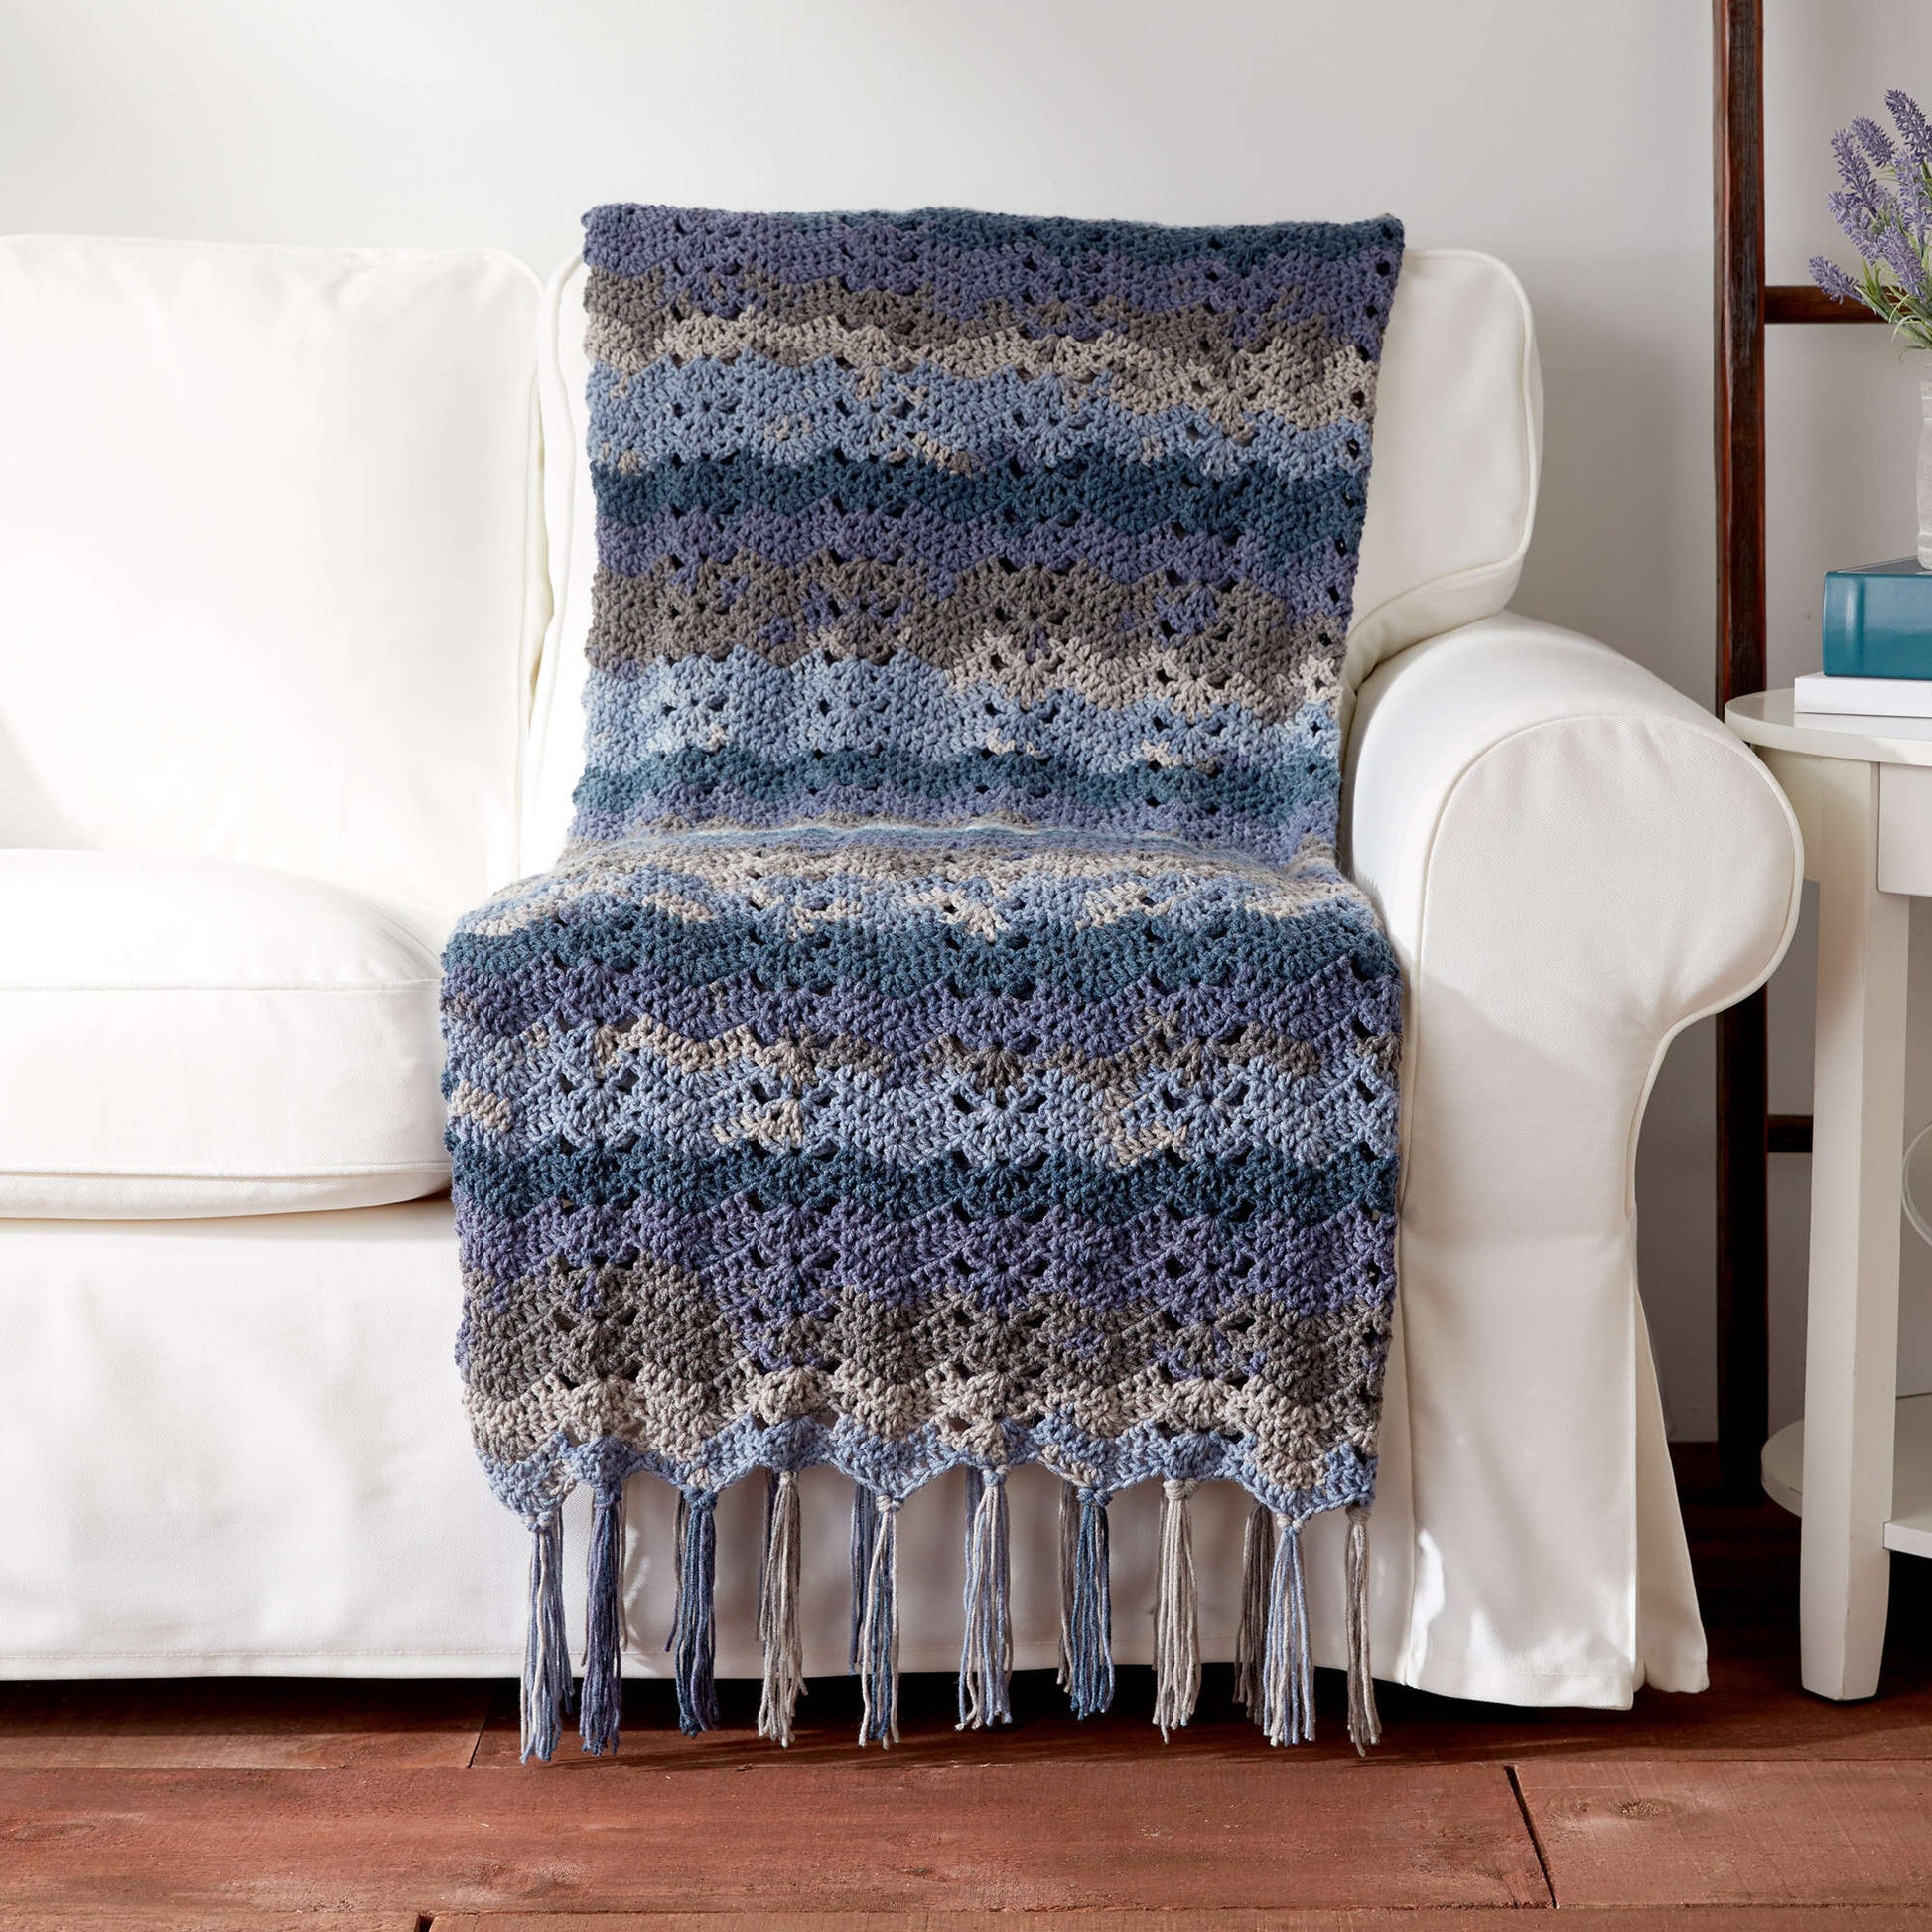 Free Caron Ocean Waves Crochet Blanket Pattern